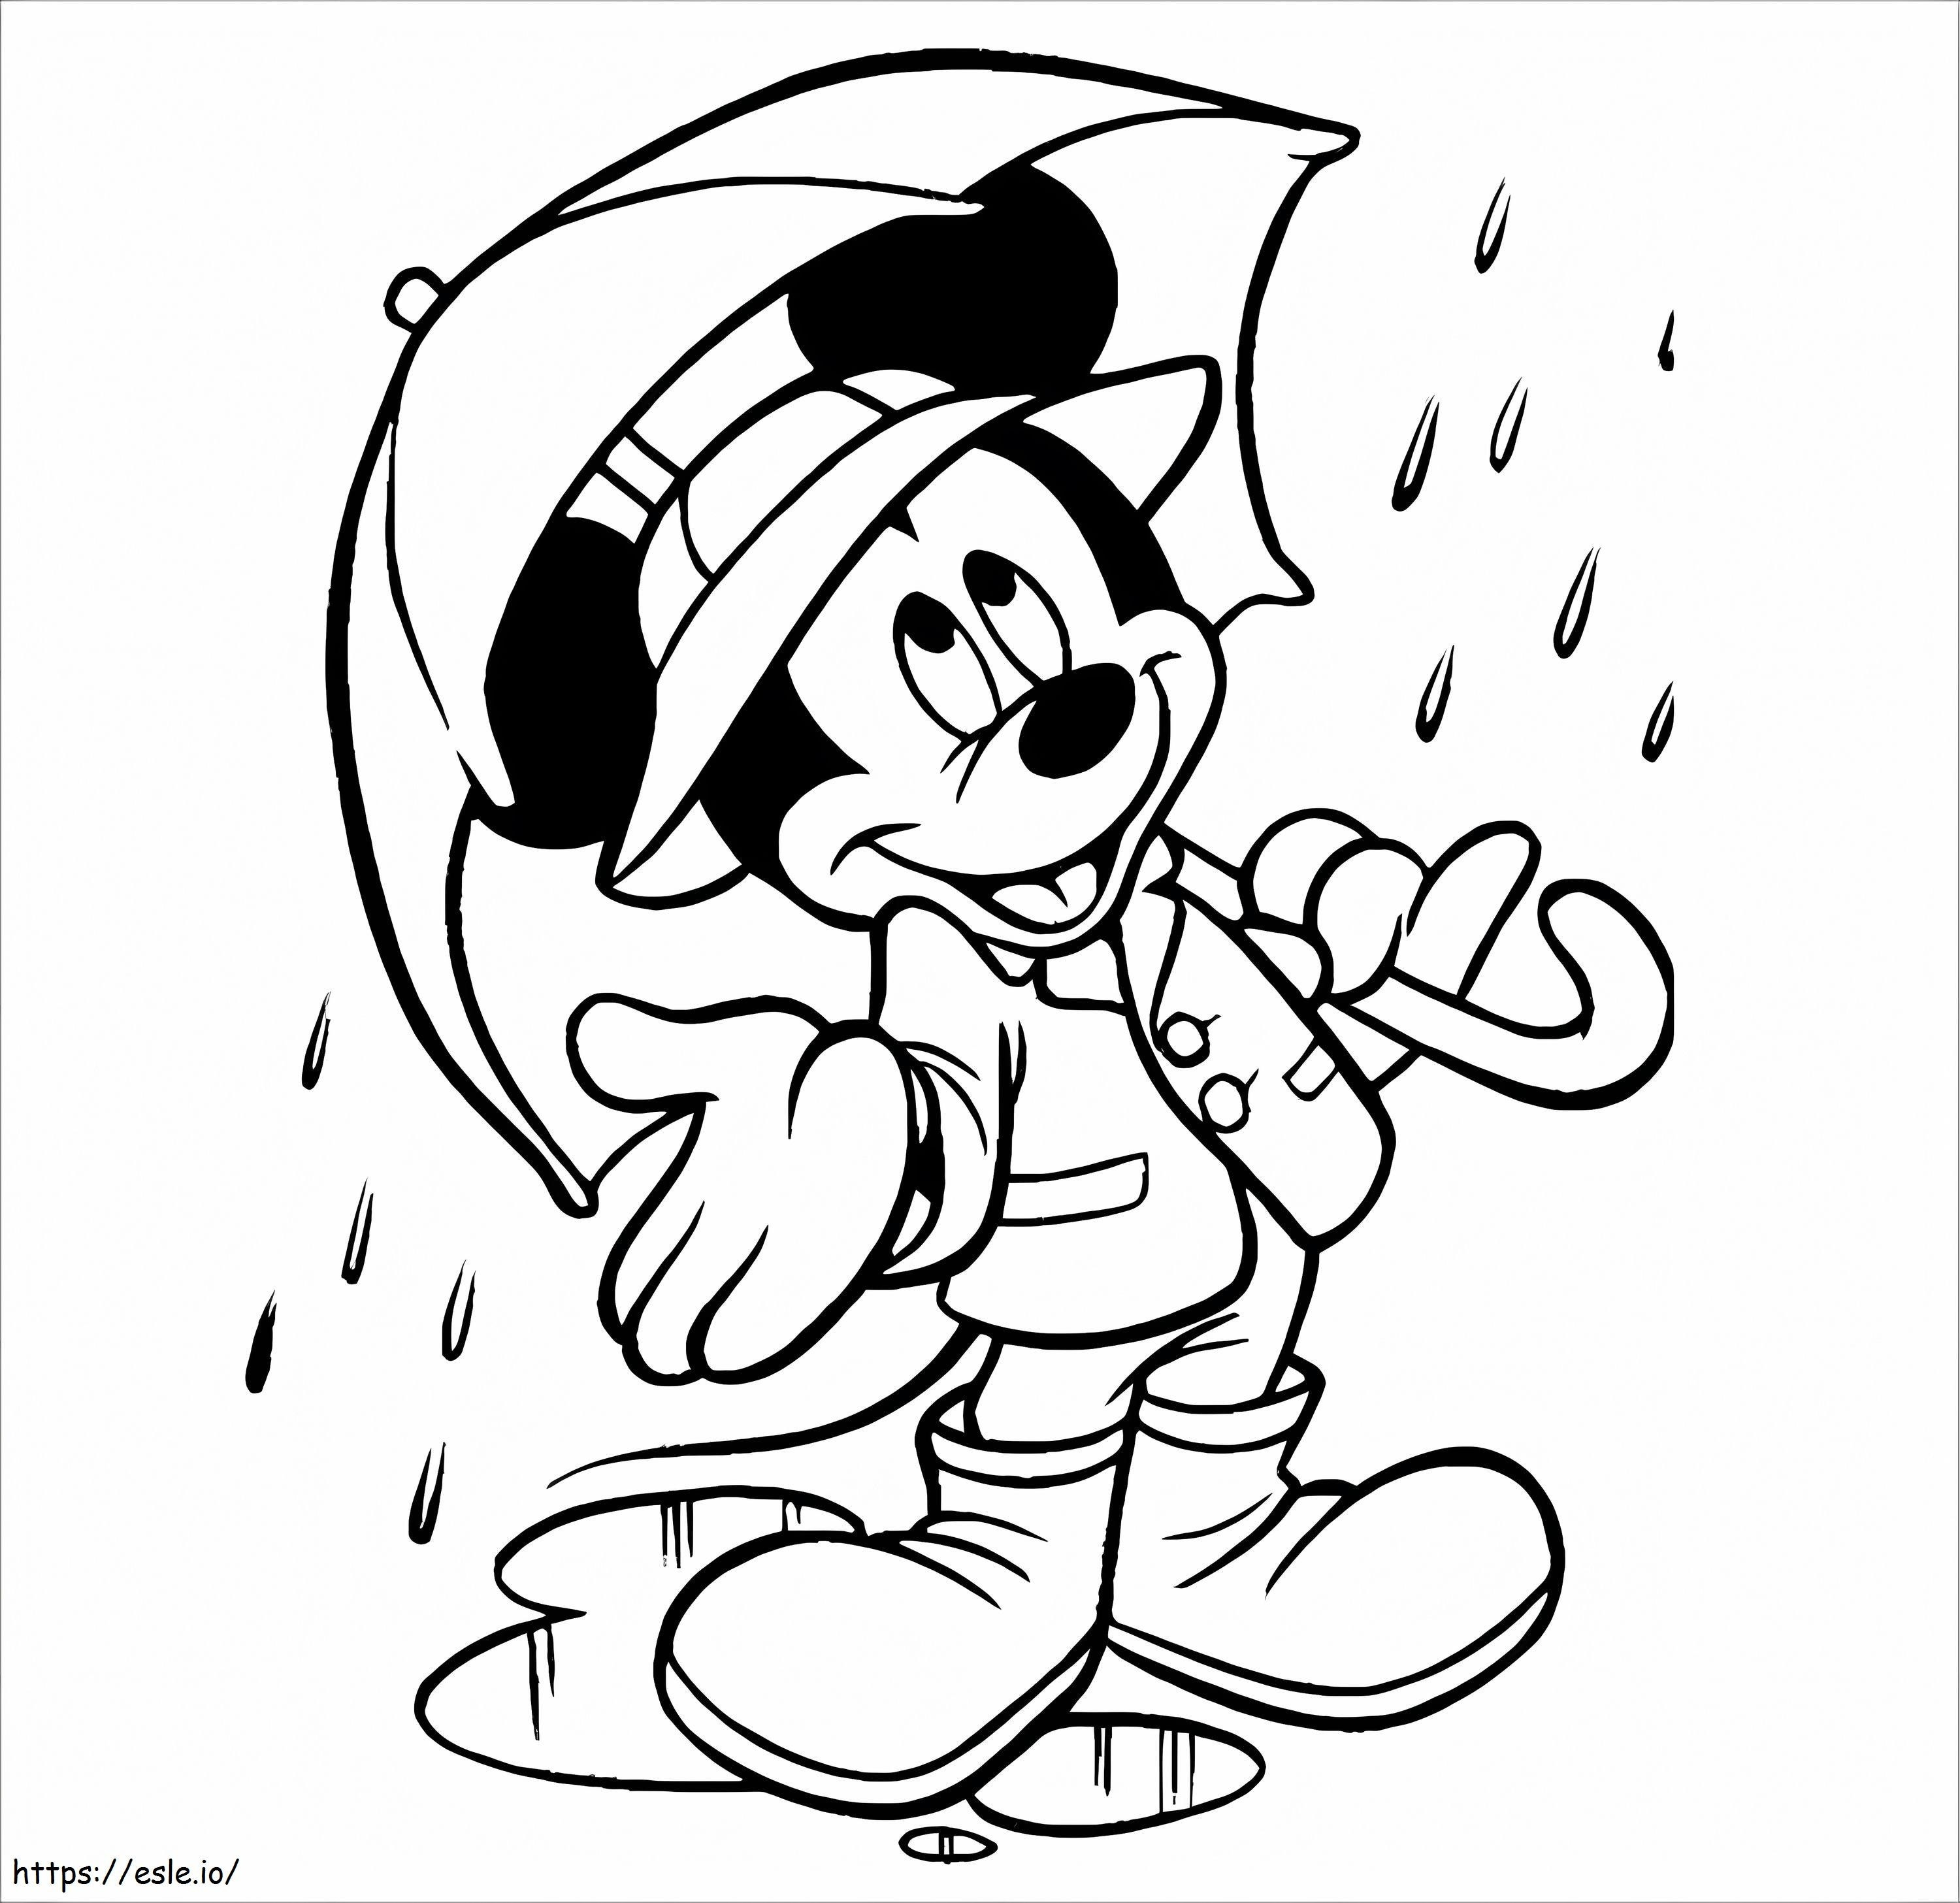 Mickey Mouse ținând o umbrelă în ploaie de colorat